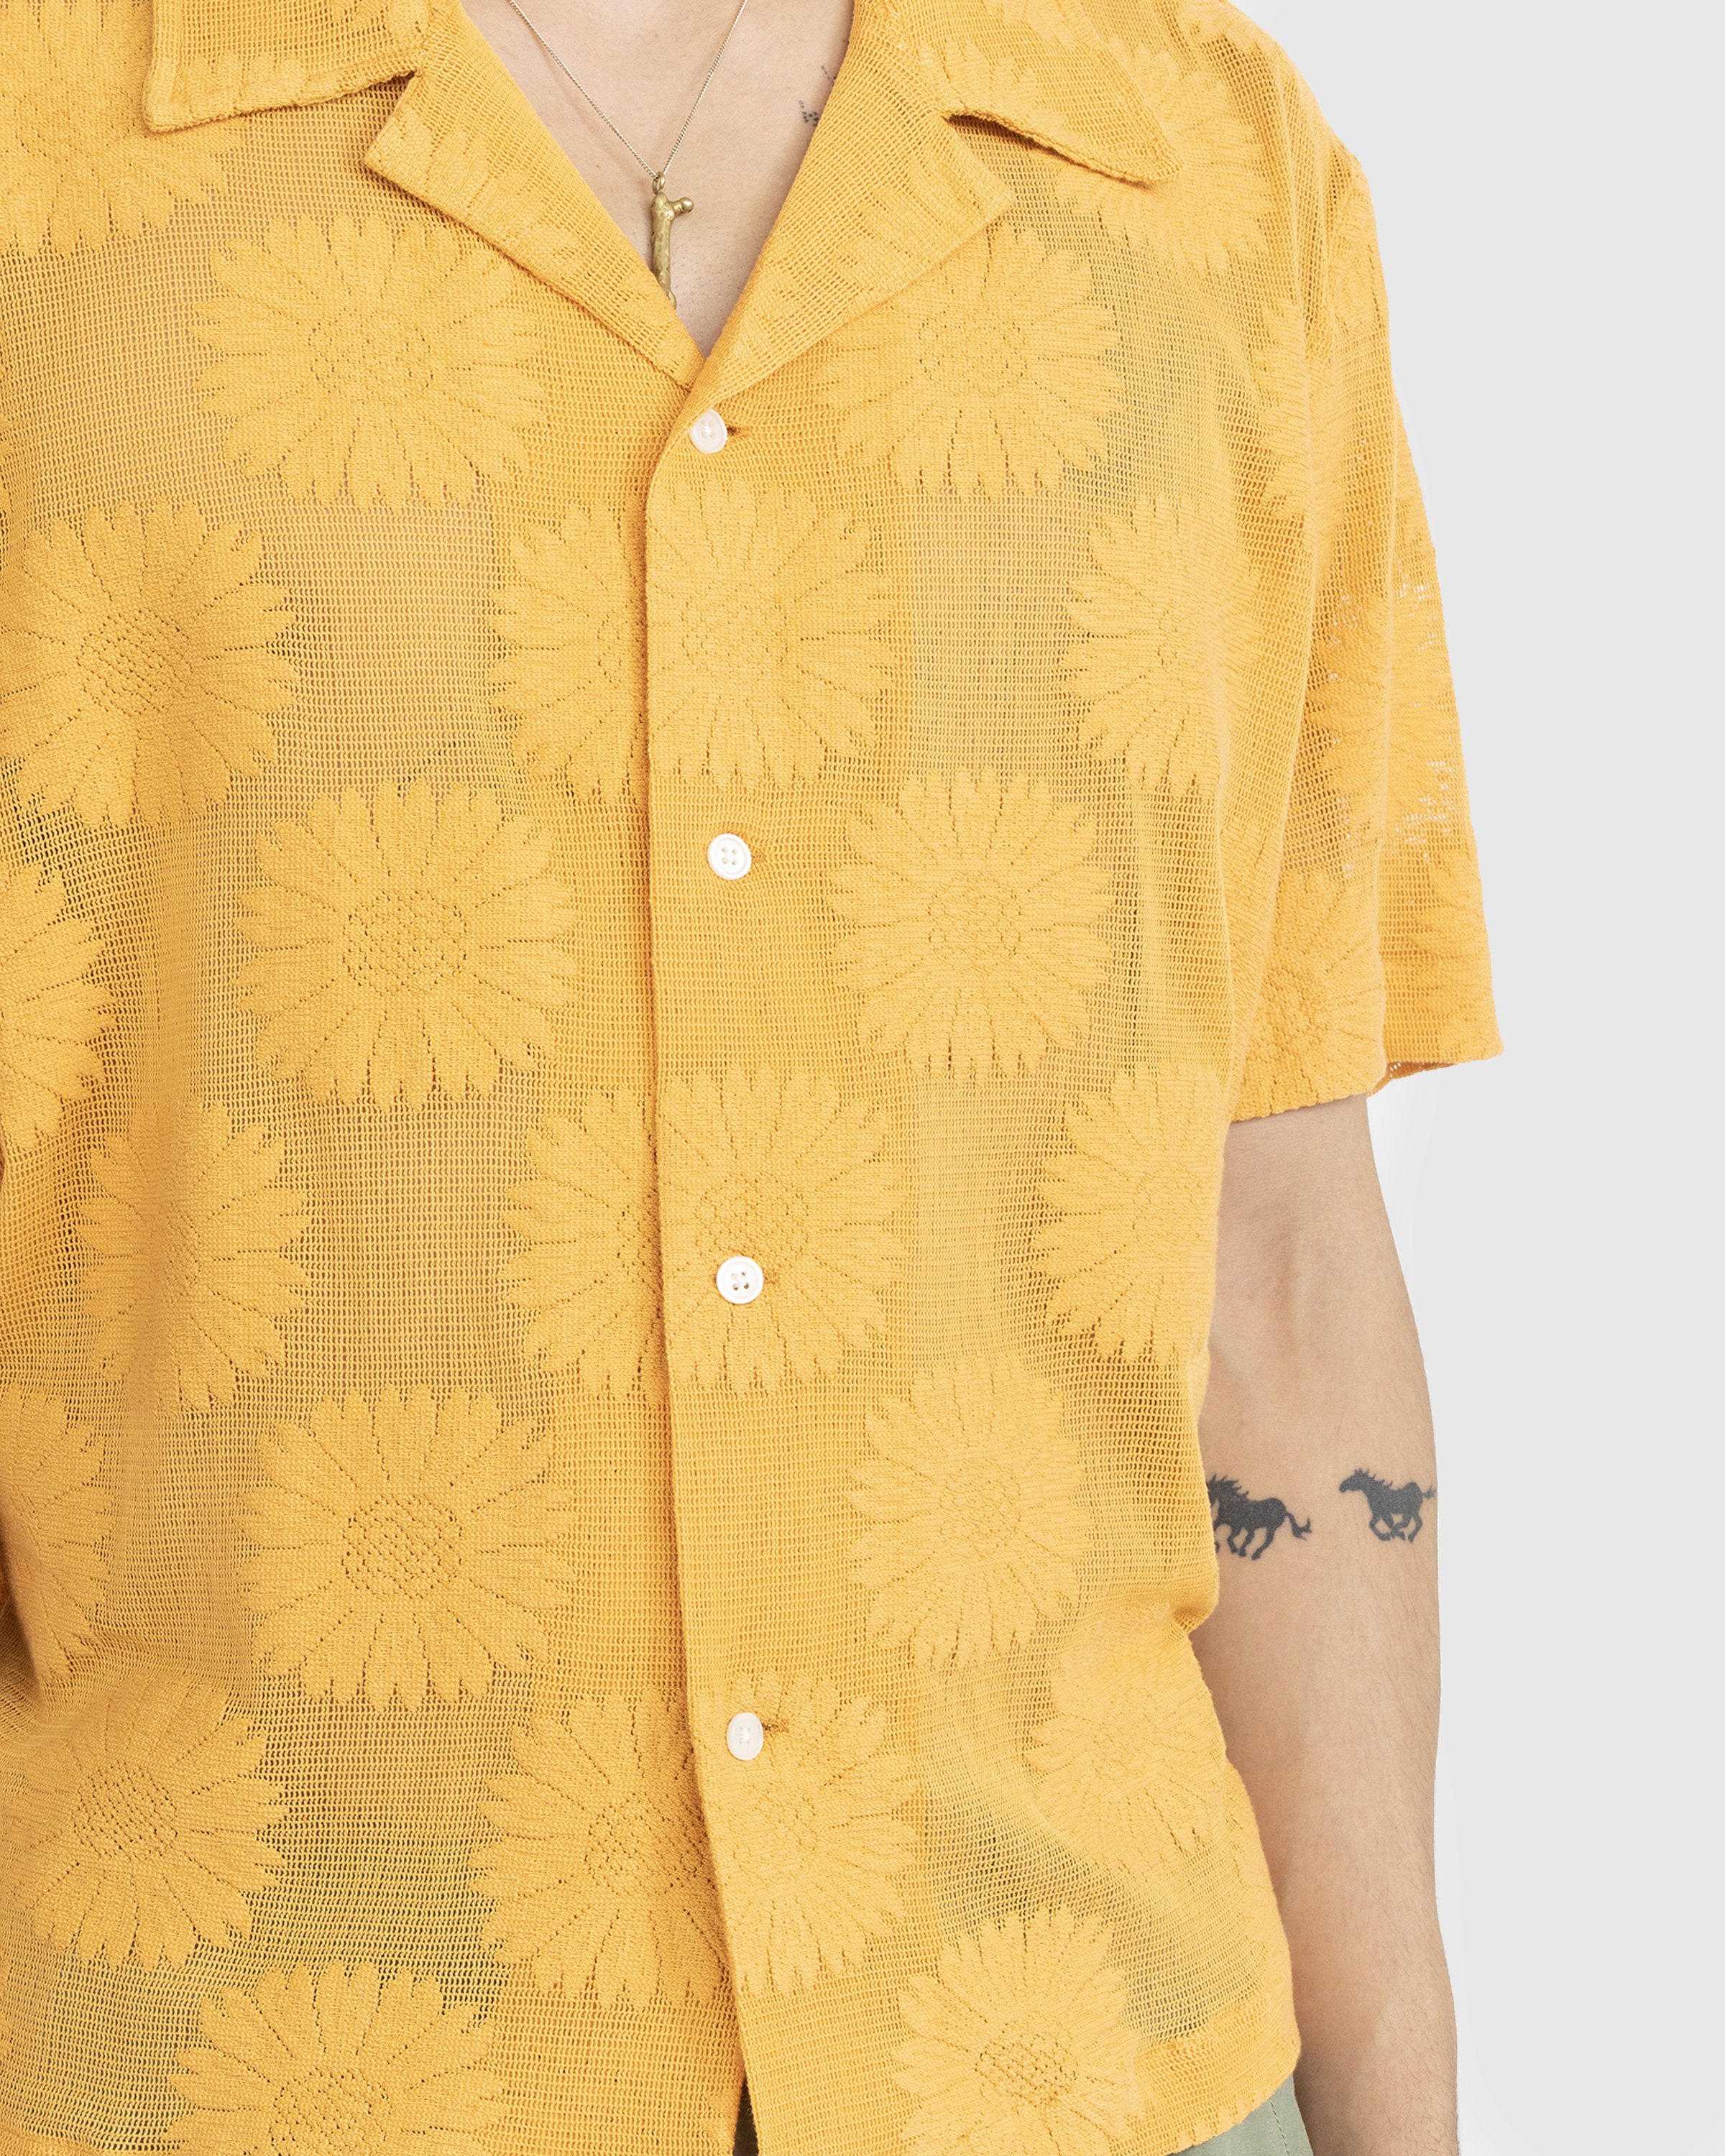 Bode - Sunflower Lace Shortsleeve Shirt - Clothing - Yellow - Image 4